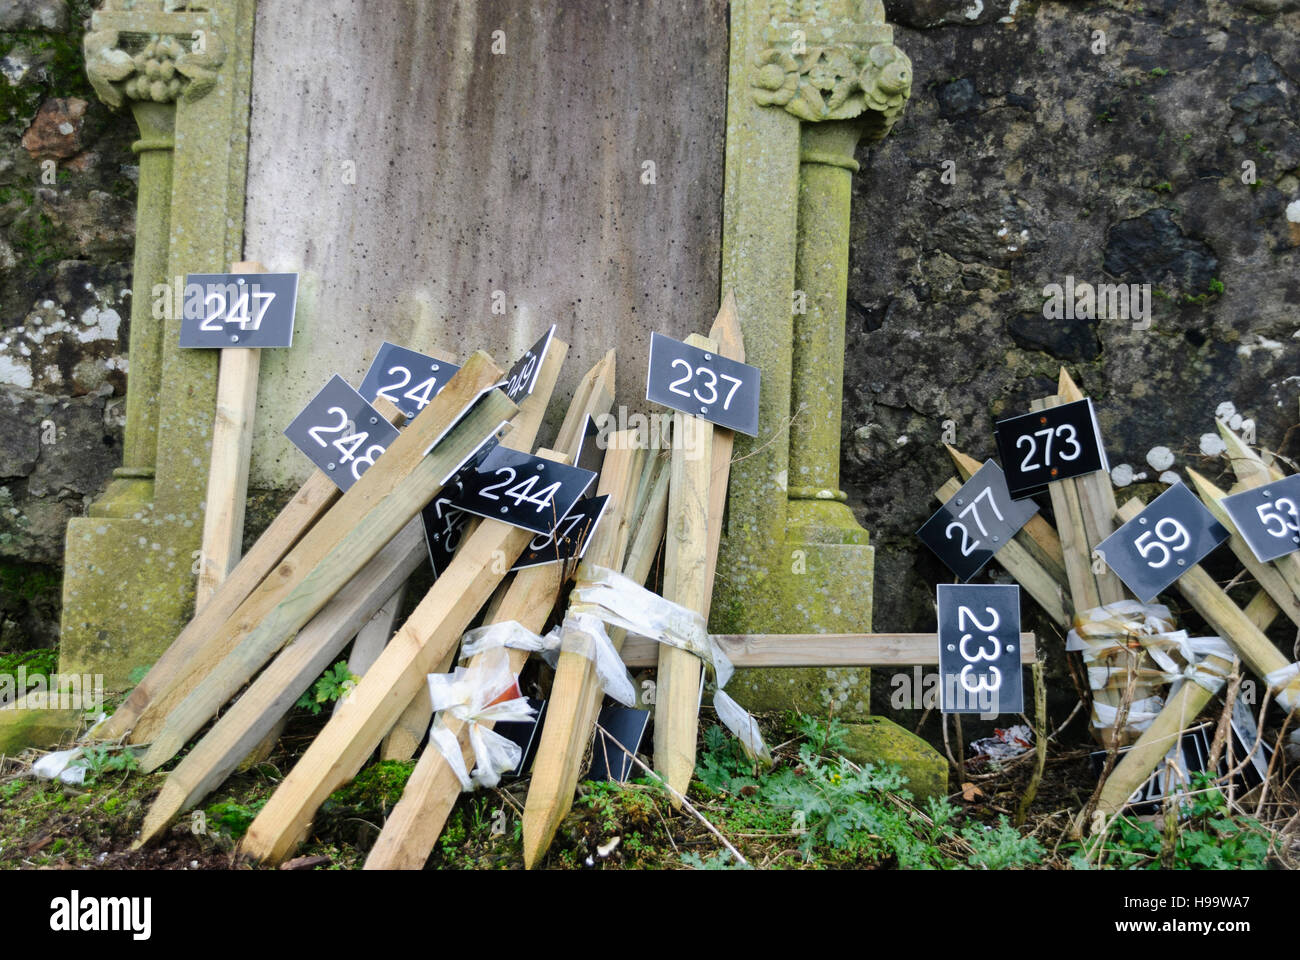 Piquets en bois avec panneaux numérotés afin d'identifier les tombes dans un cimetière. Banque D'Images